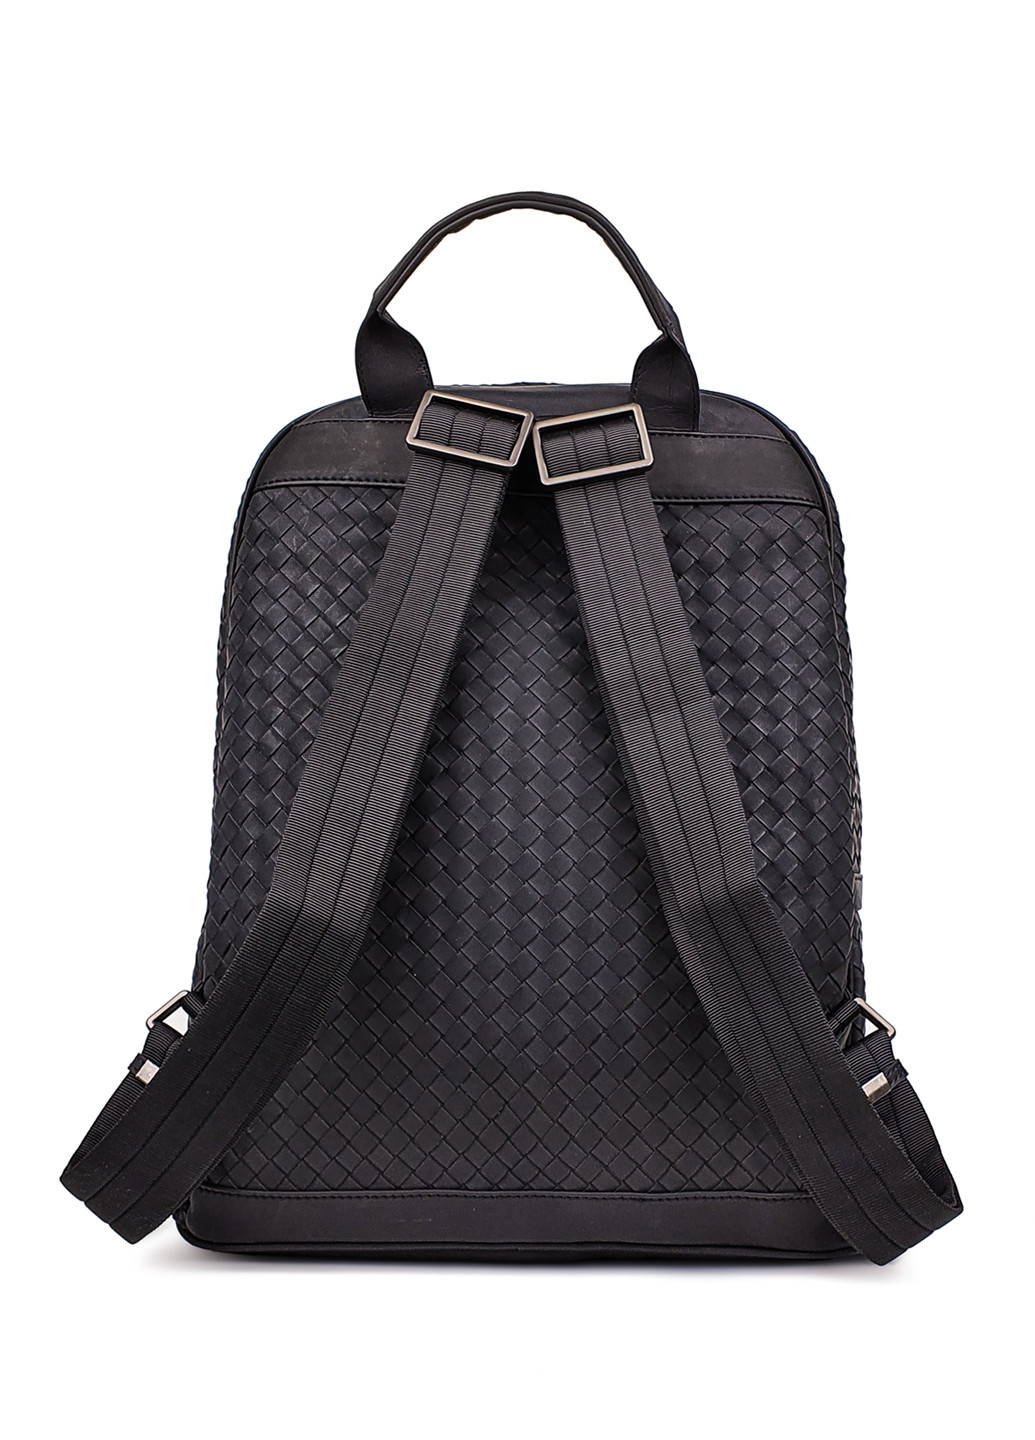 Модный мужской кожаный рюкзак темно-серого цвета Fashion рюкзак (251825960)